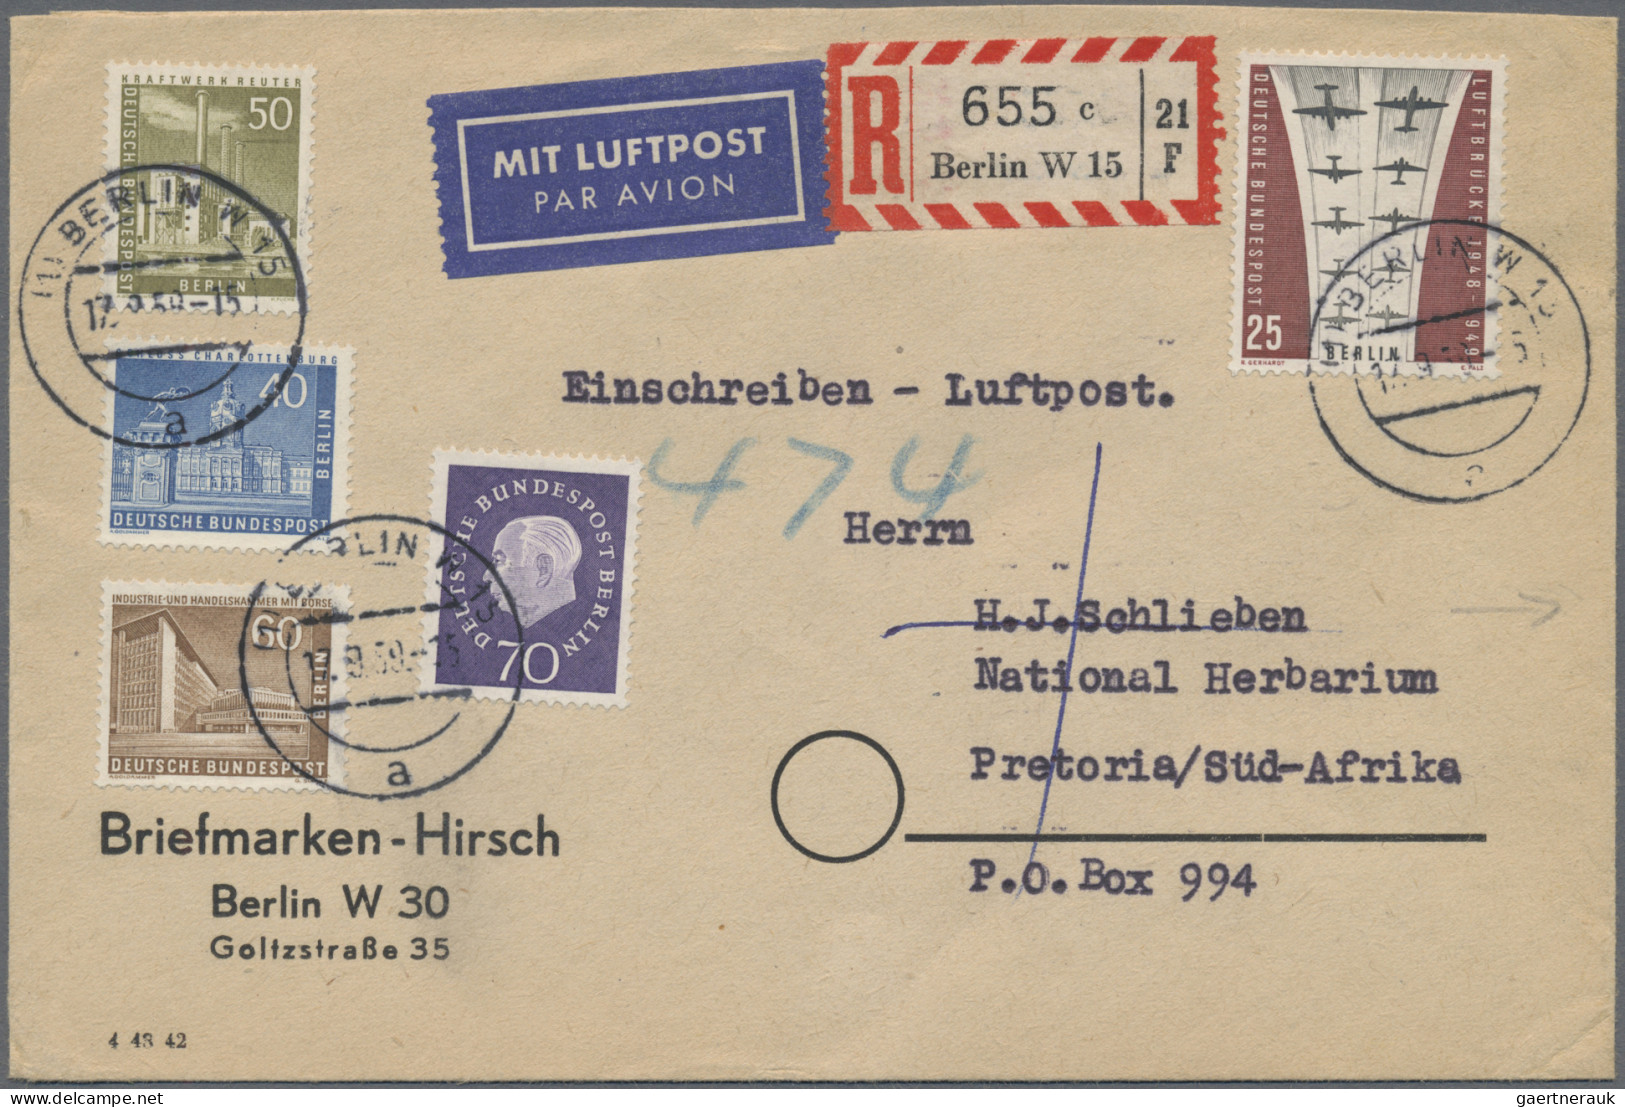 Berlin: 1870-1990: Bestand von mehr als 400 Briefen, Postkarten, FDCs, Ansichtsk